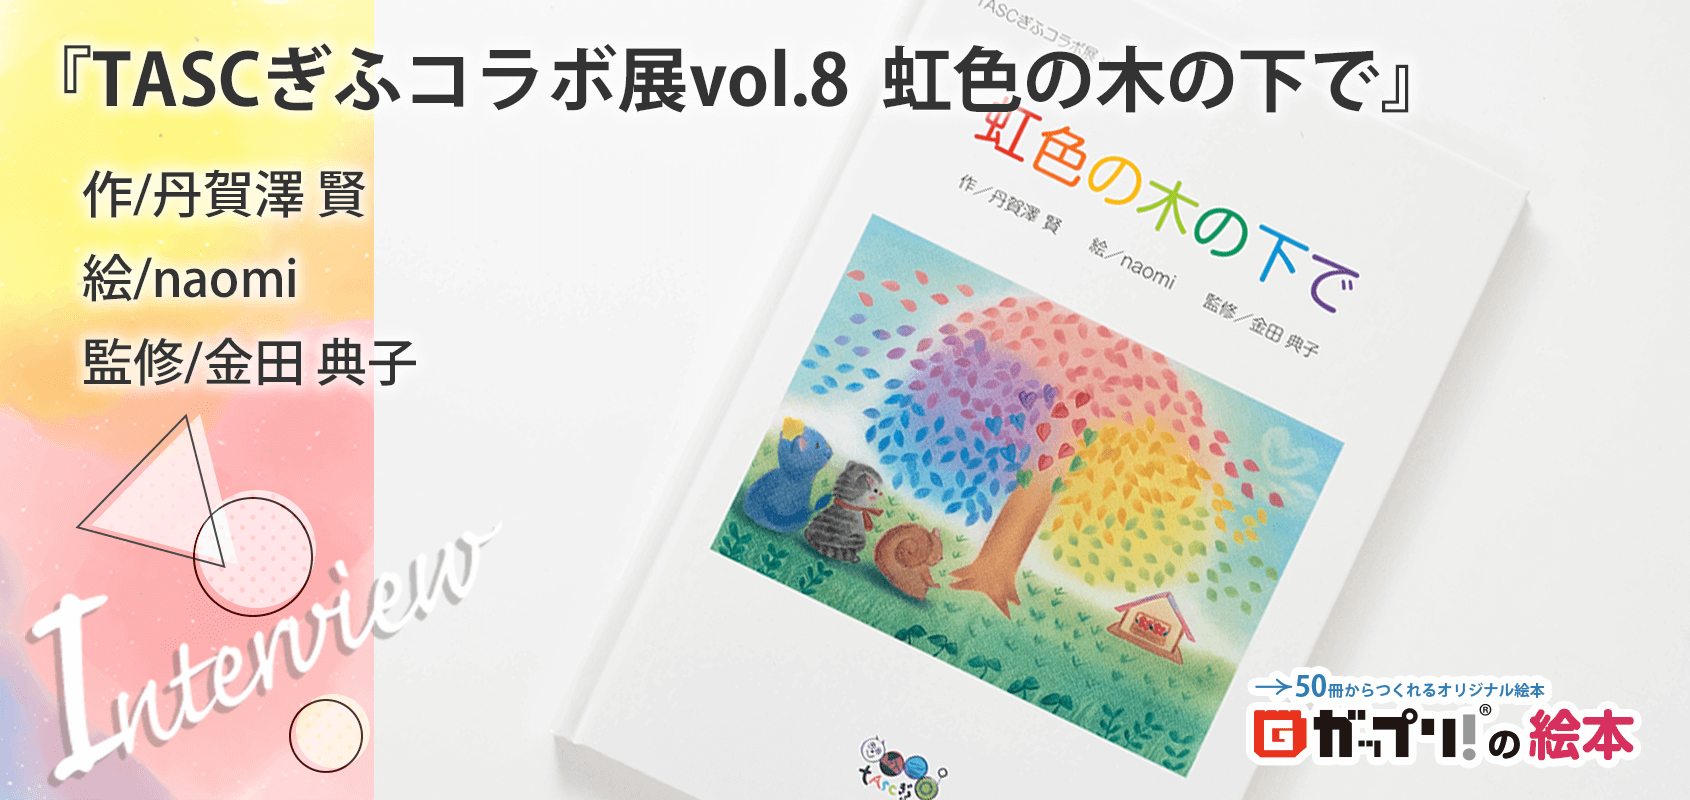 naomiさんと丹賀澤賢さん製作のオリジナル絵本『TASCぎふコラボ展vol.8  虹色の木の下で』